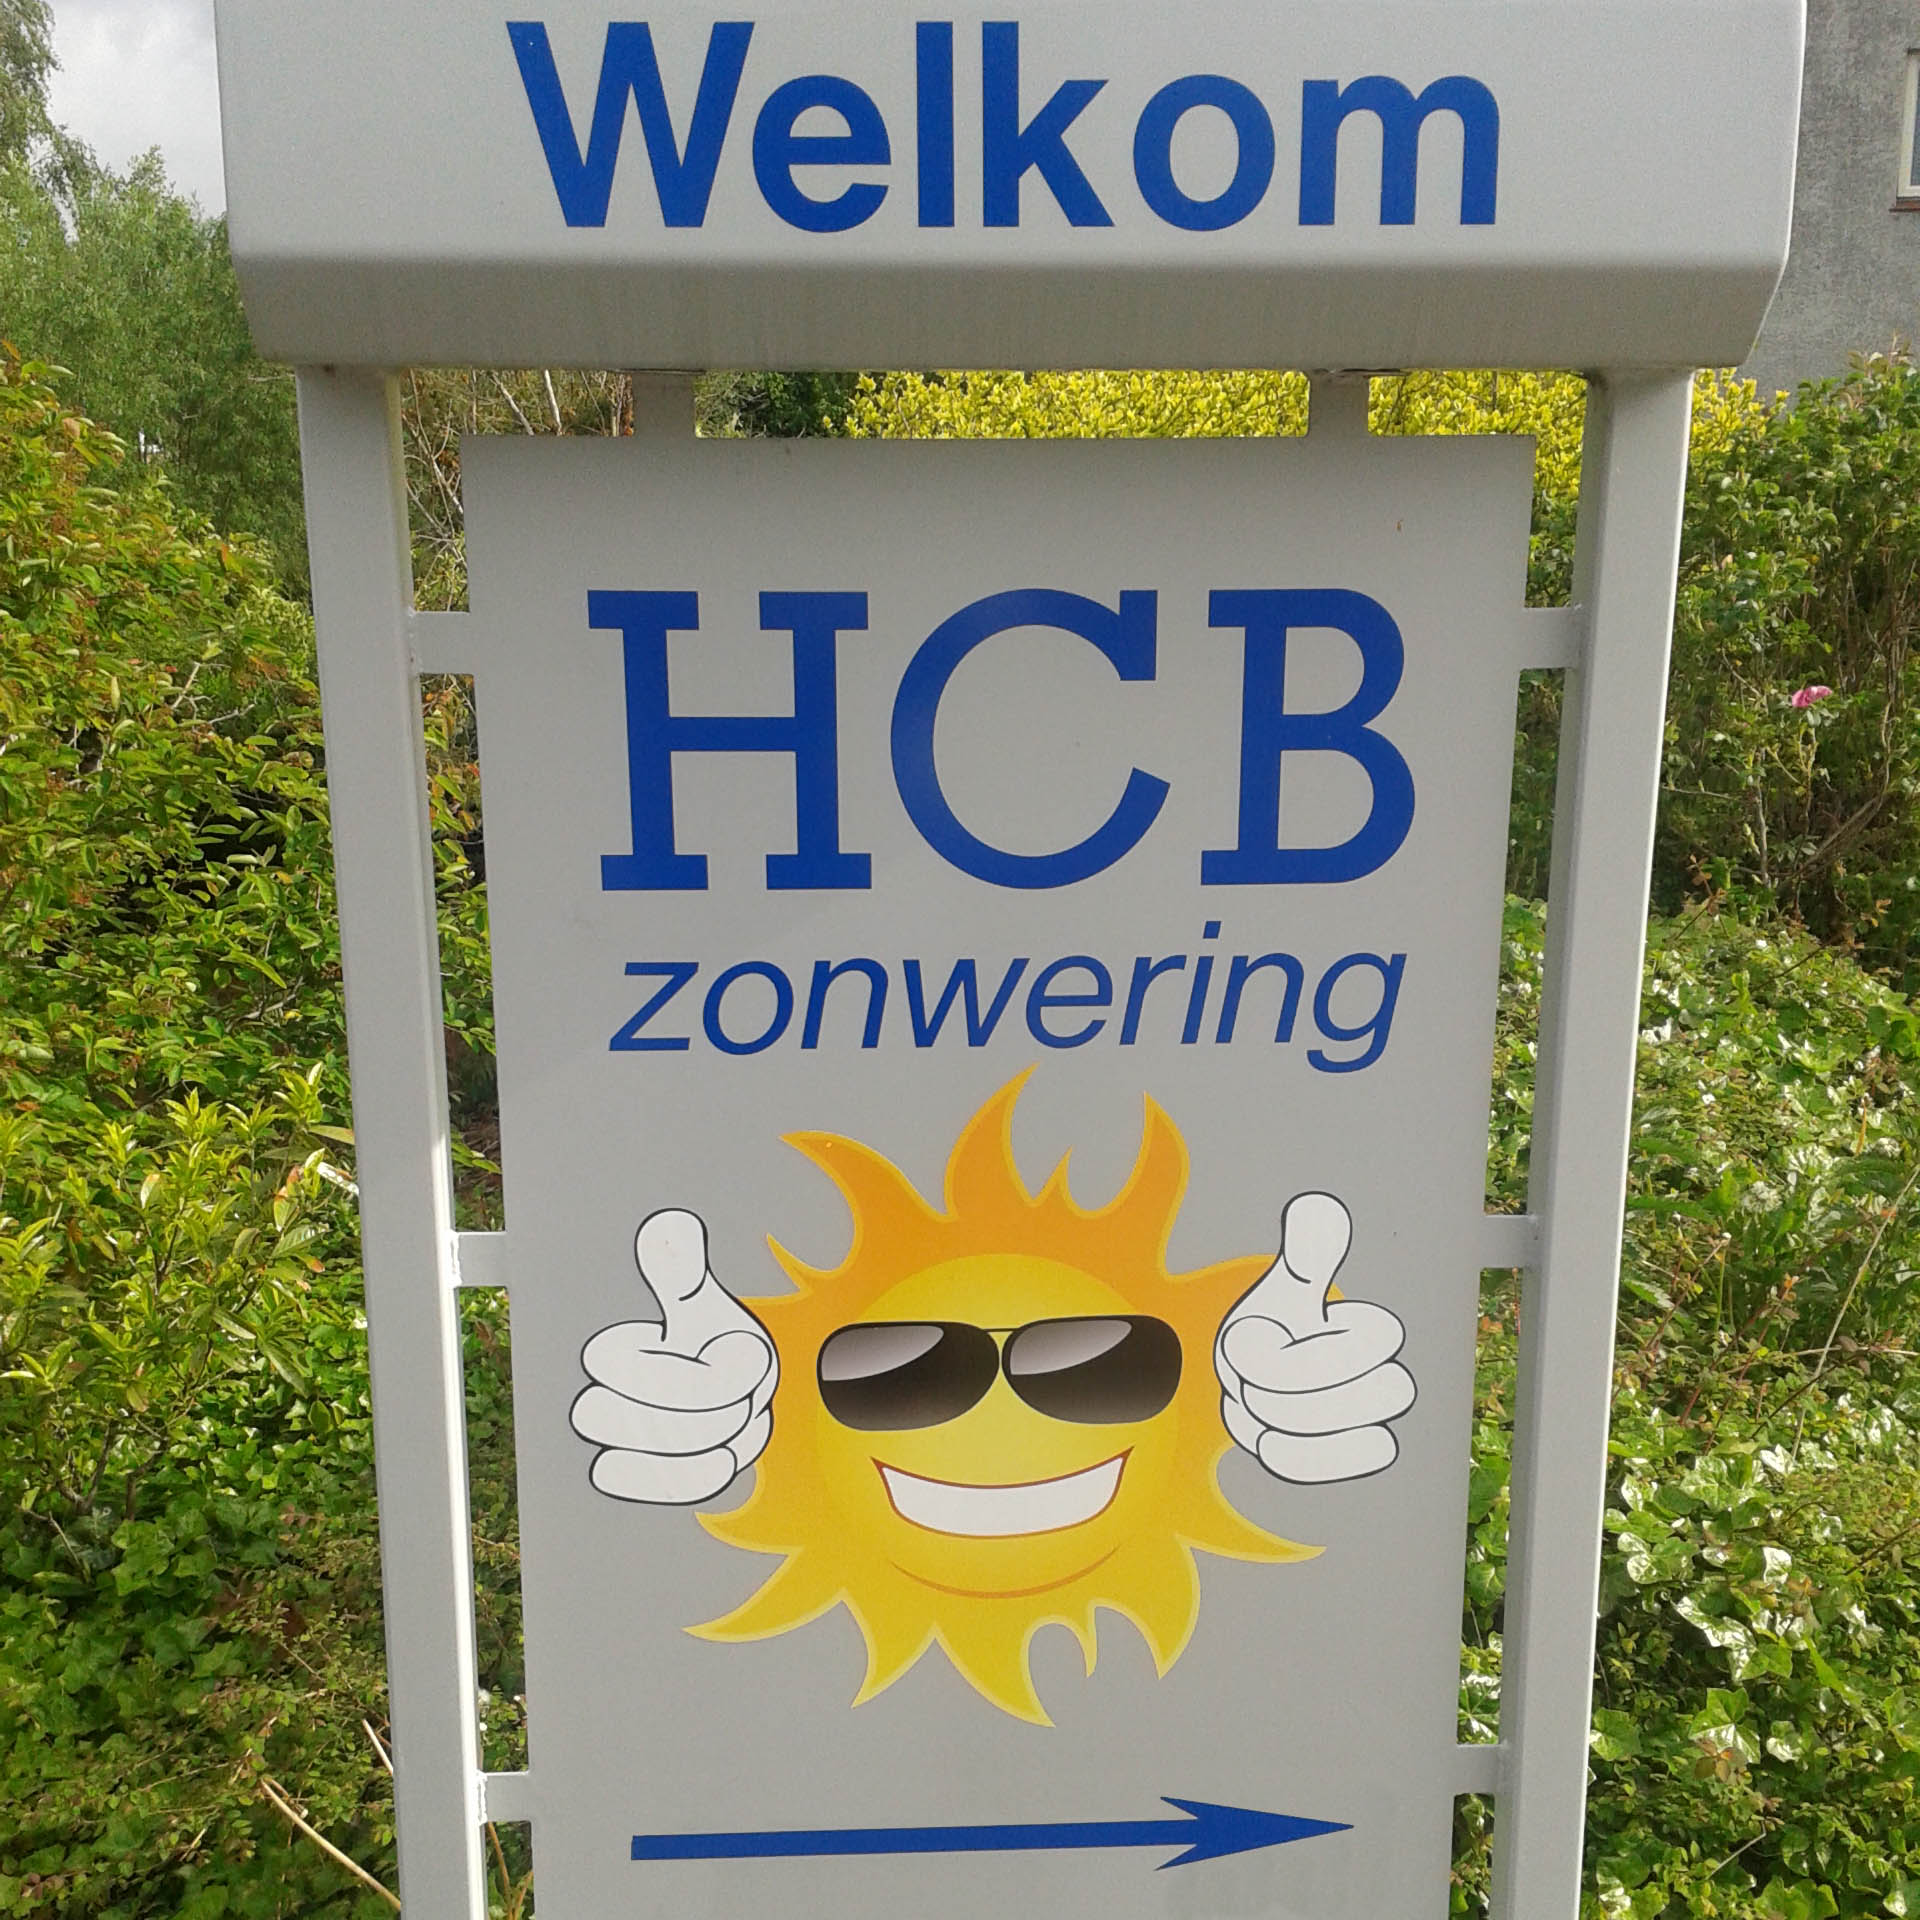 HCB zonwering in de Hoeksche Waard - Oud Beijerland, Nieuw Beijerland, Piershil, Numansdorp, Strijen, Puutershoek